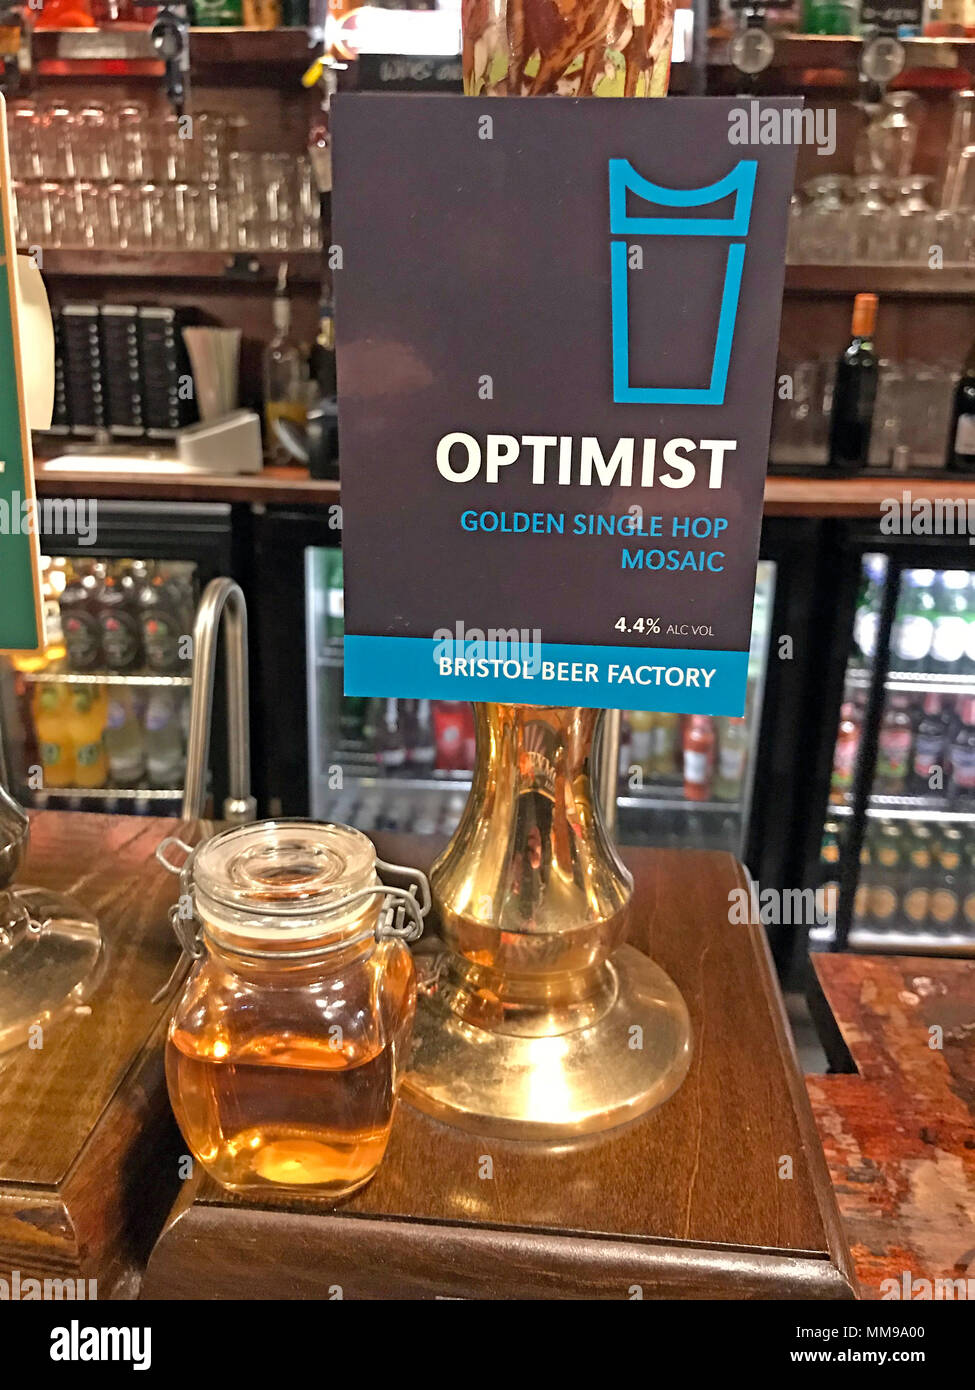 Optimist Bristol usine de bière La bière pompes sur un bar, dans un pub anglais traditionnel, England, UK Banque D'Images